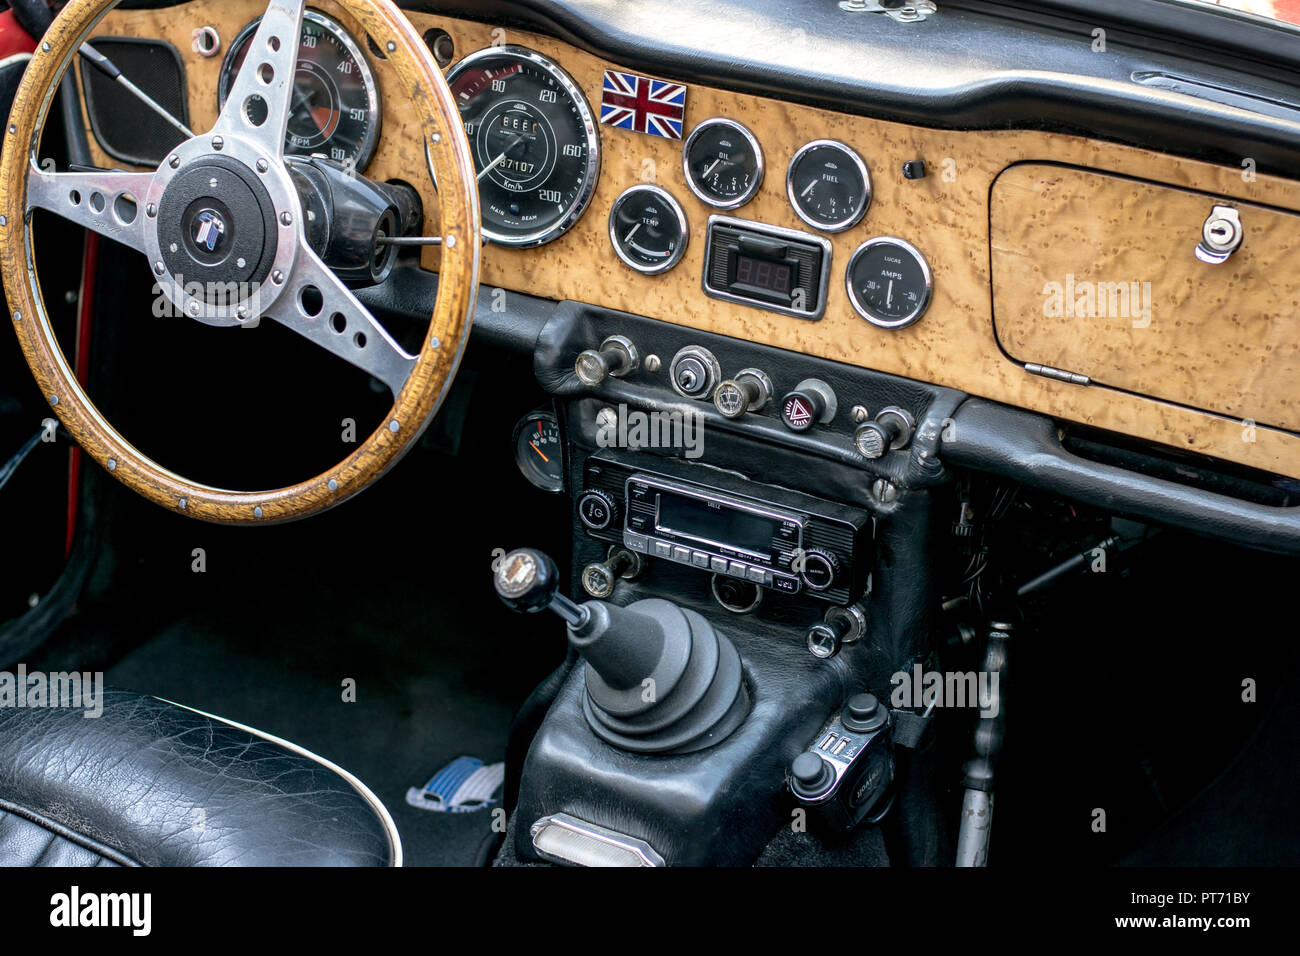 Intérieur de la British Triumph oldtimer avec volant en bois et tableau de bord, 07.10.2018, Pforzheim, Allemagne Banque D'Images